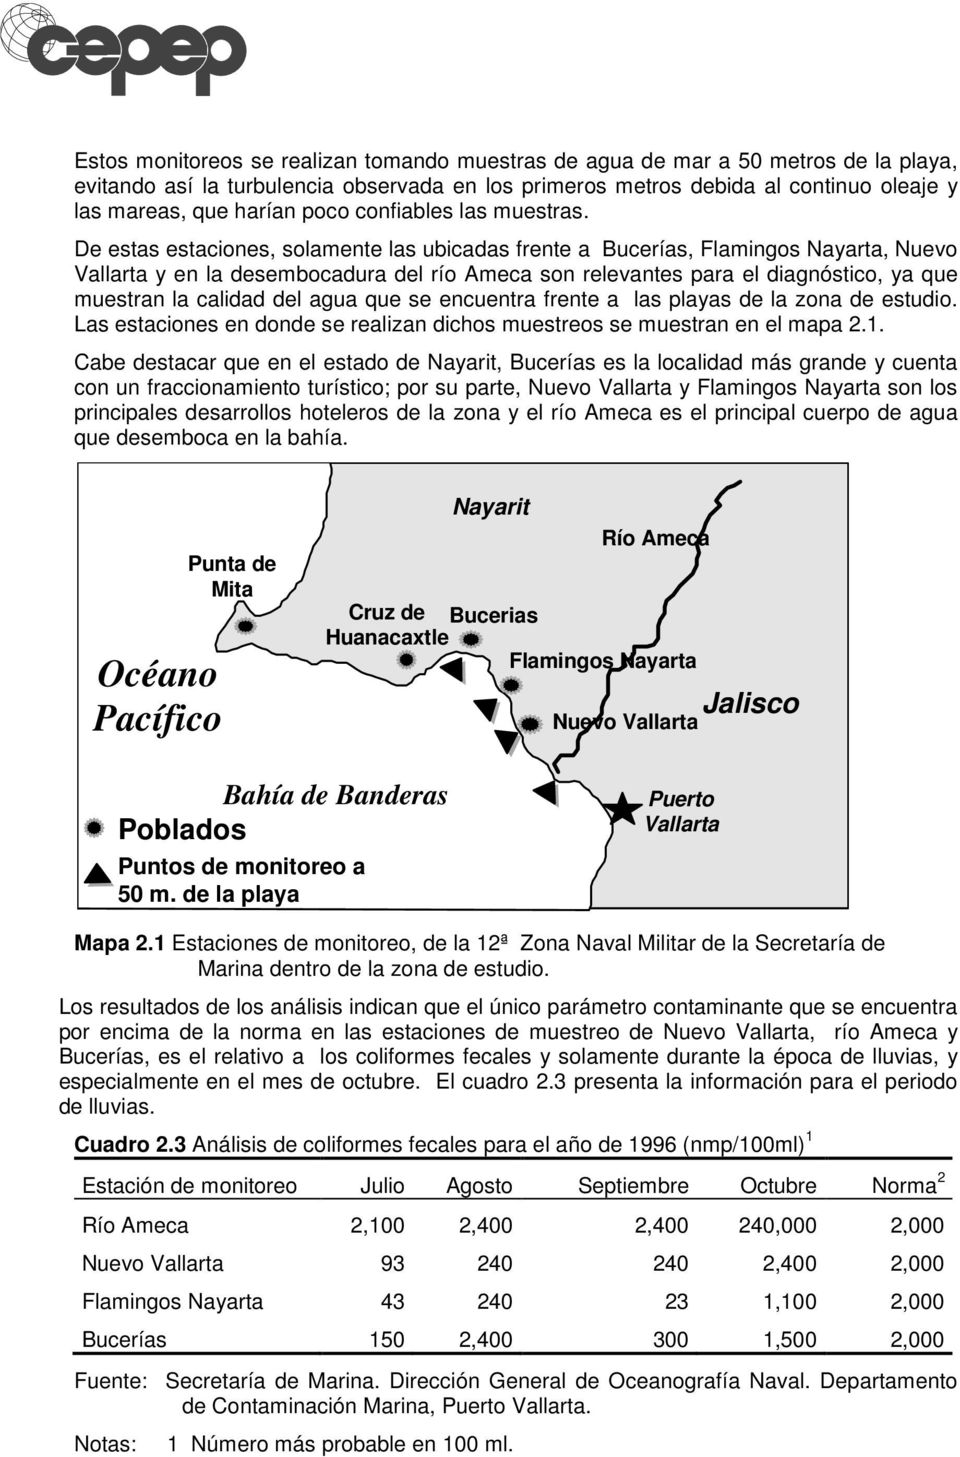 De estas estaciones, solamente las ubicadas frente a Bucerías, Flamingos Nayarta, Nuevo Vallarta y en la desembocadura del río Ameca son relevantes para el diagnóstico, ya que muestran la calidad del